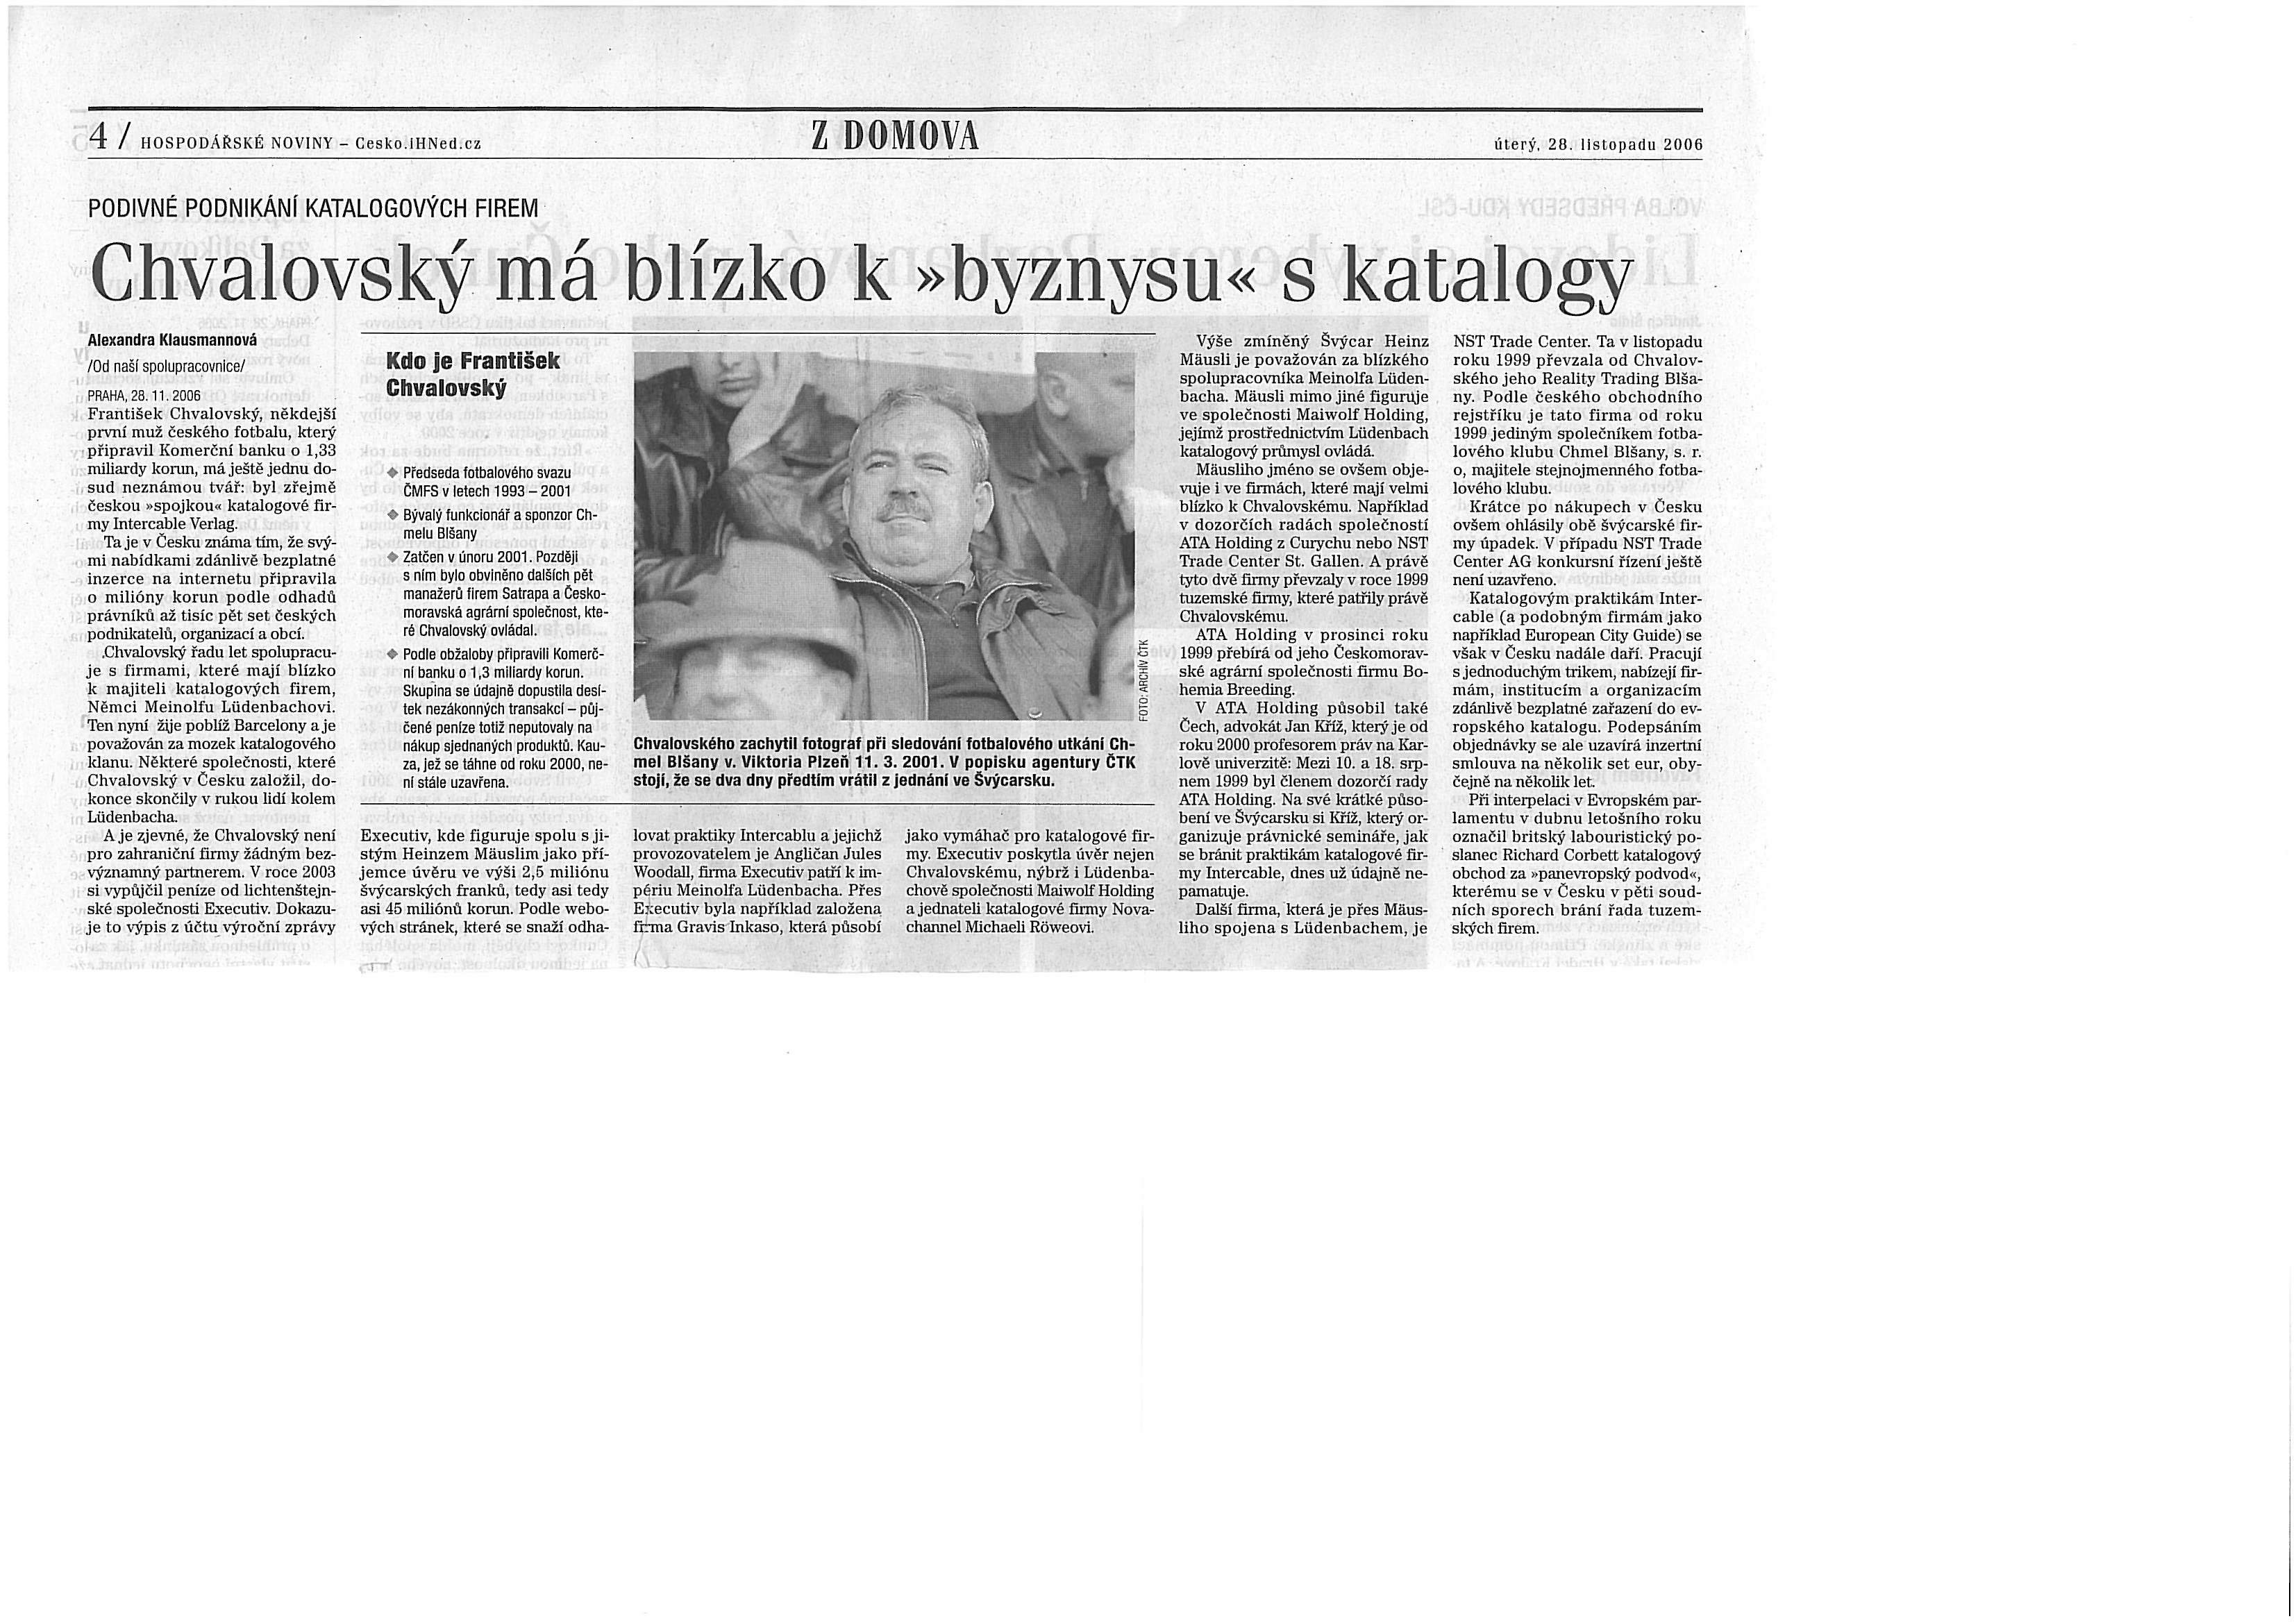 Hospodářské noviny 28.11.2006.jpg